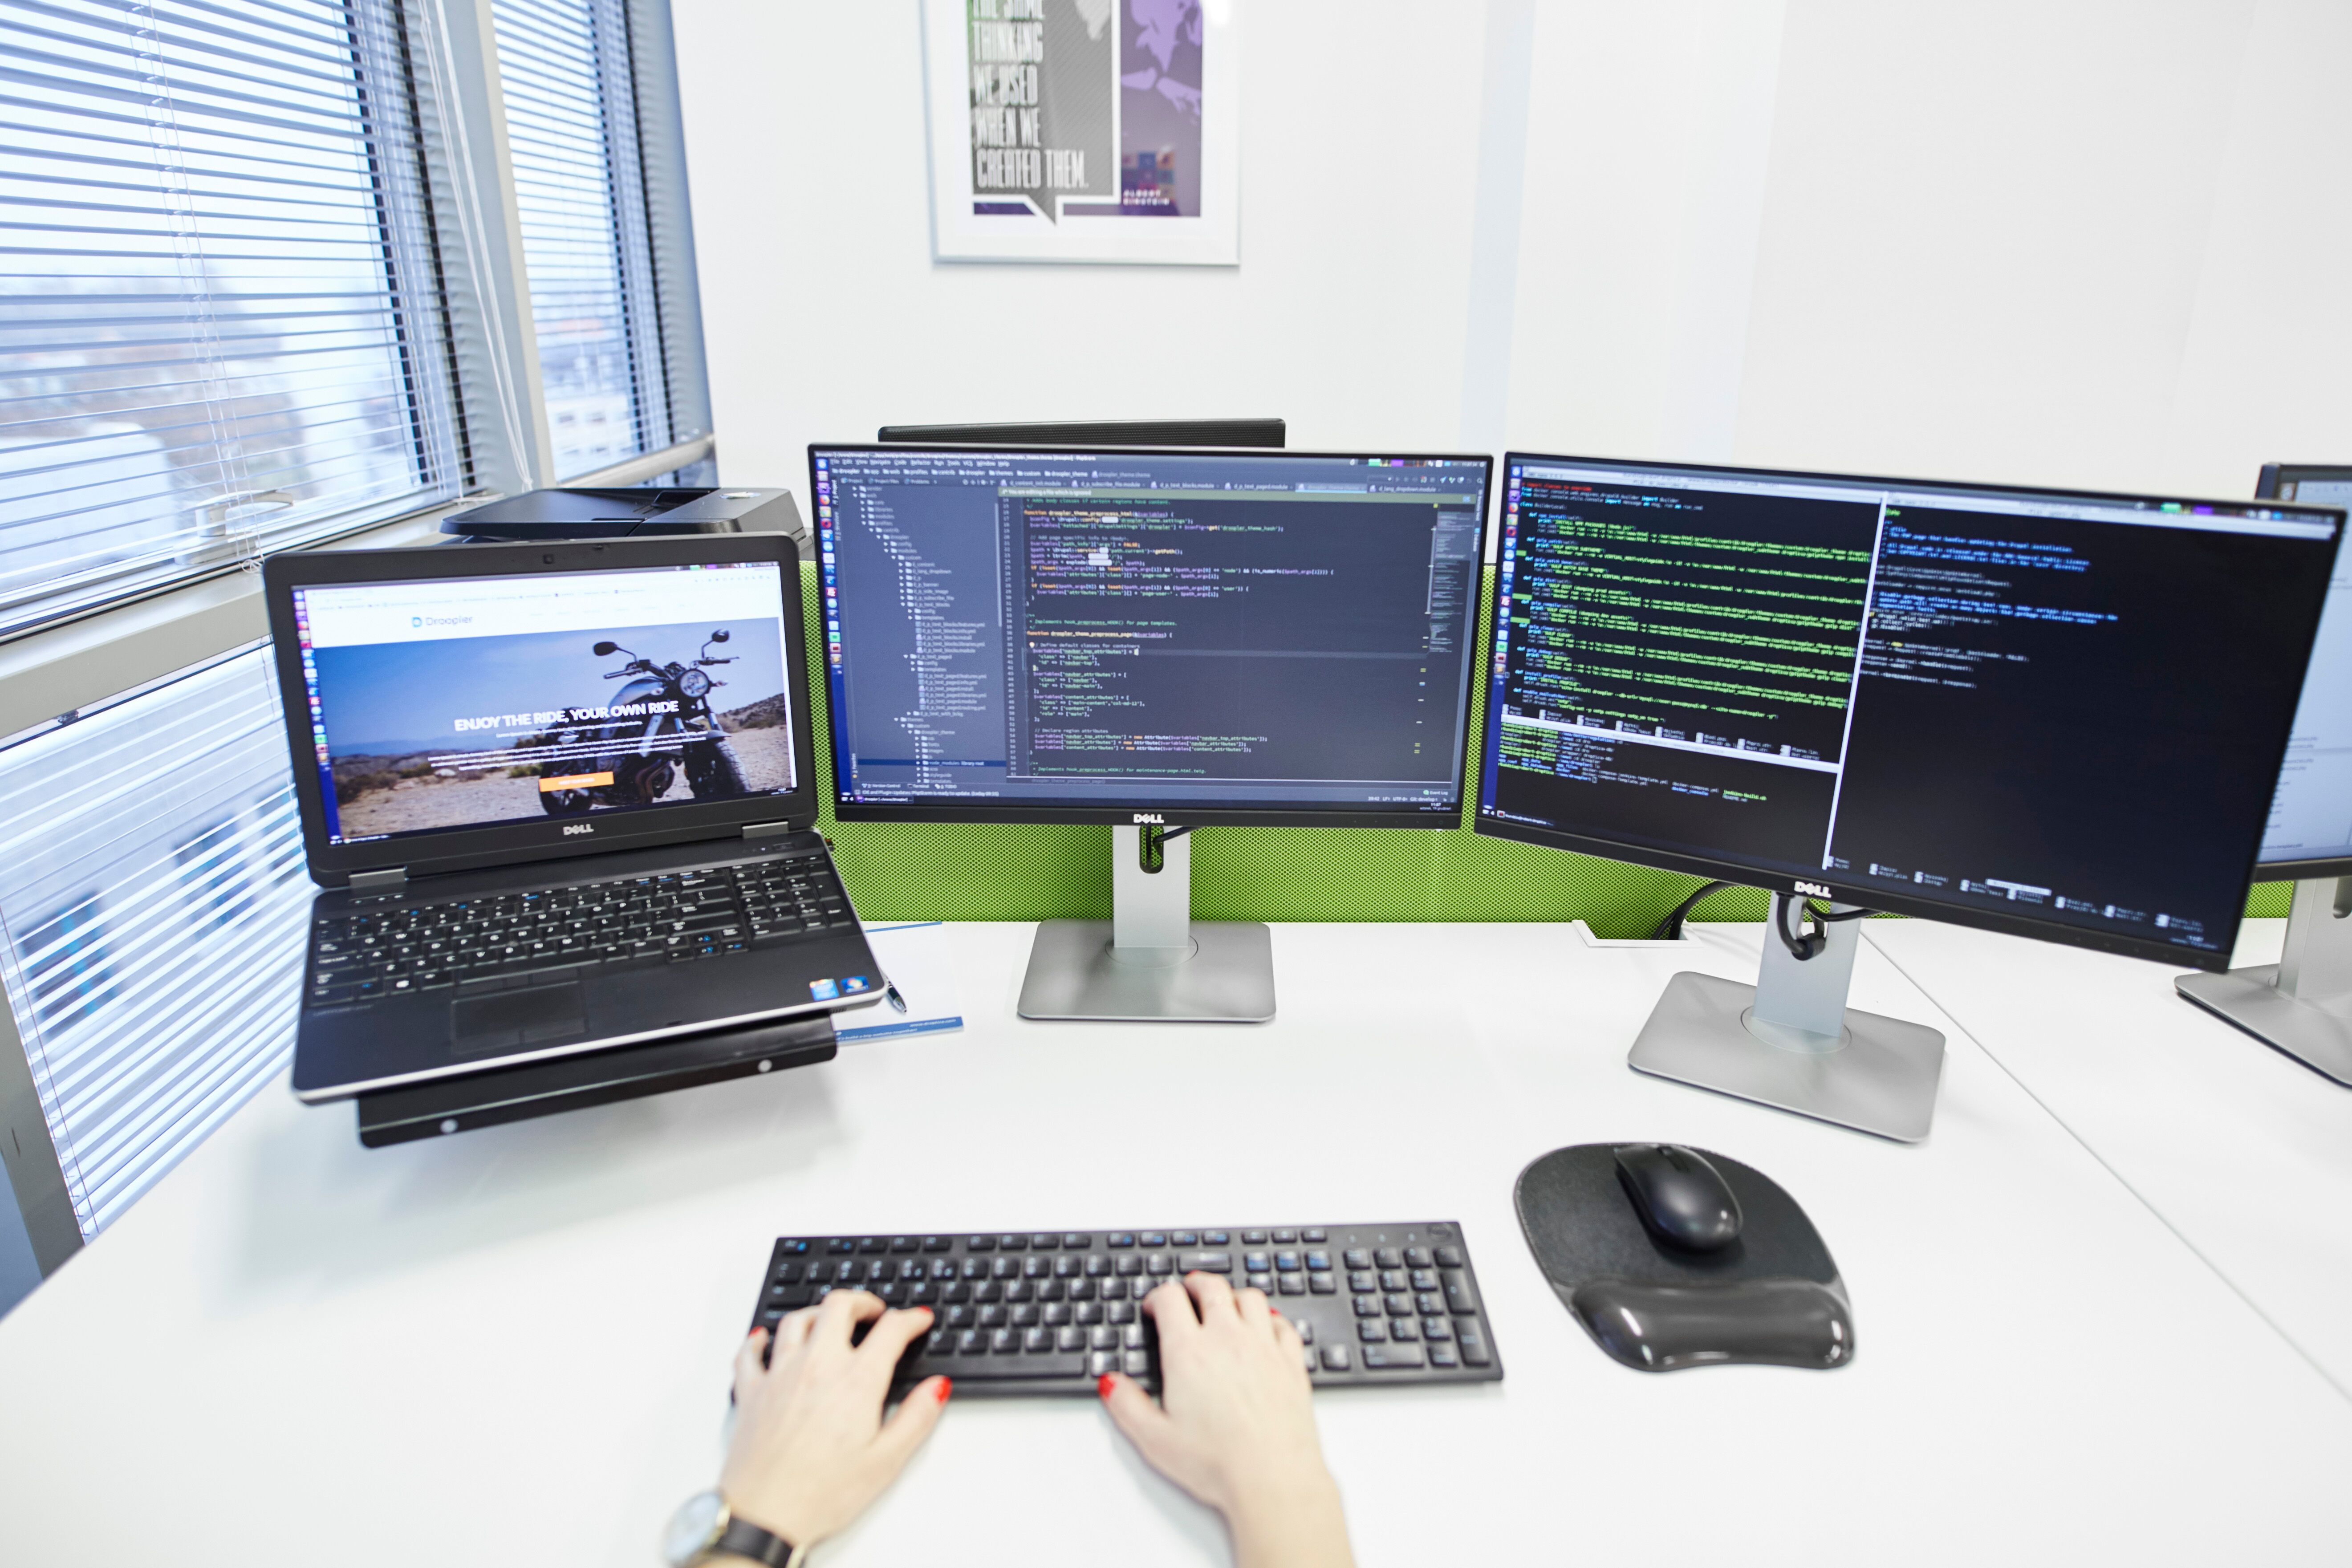 Zdjęcie stanowiska pracy. Widoczne są dwa monitory, mysz na podkładce i klawiatura, na której oparte są czyjeś dłonie